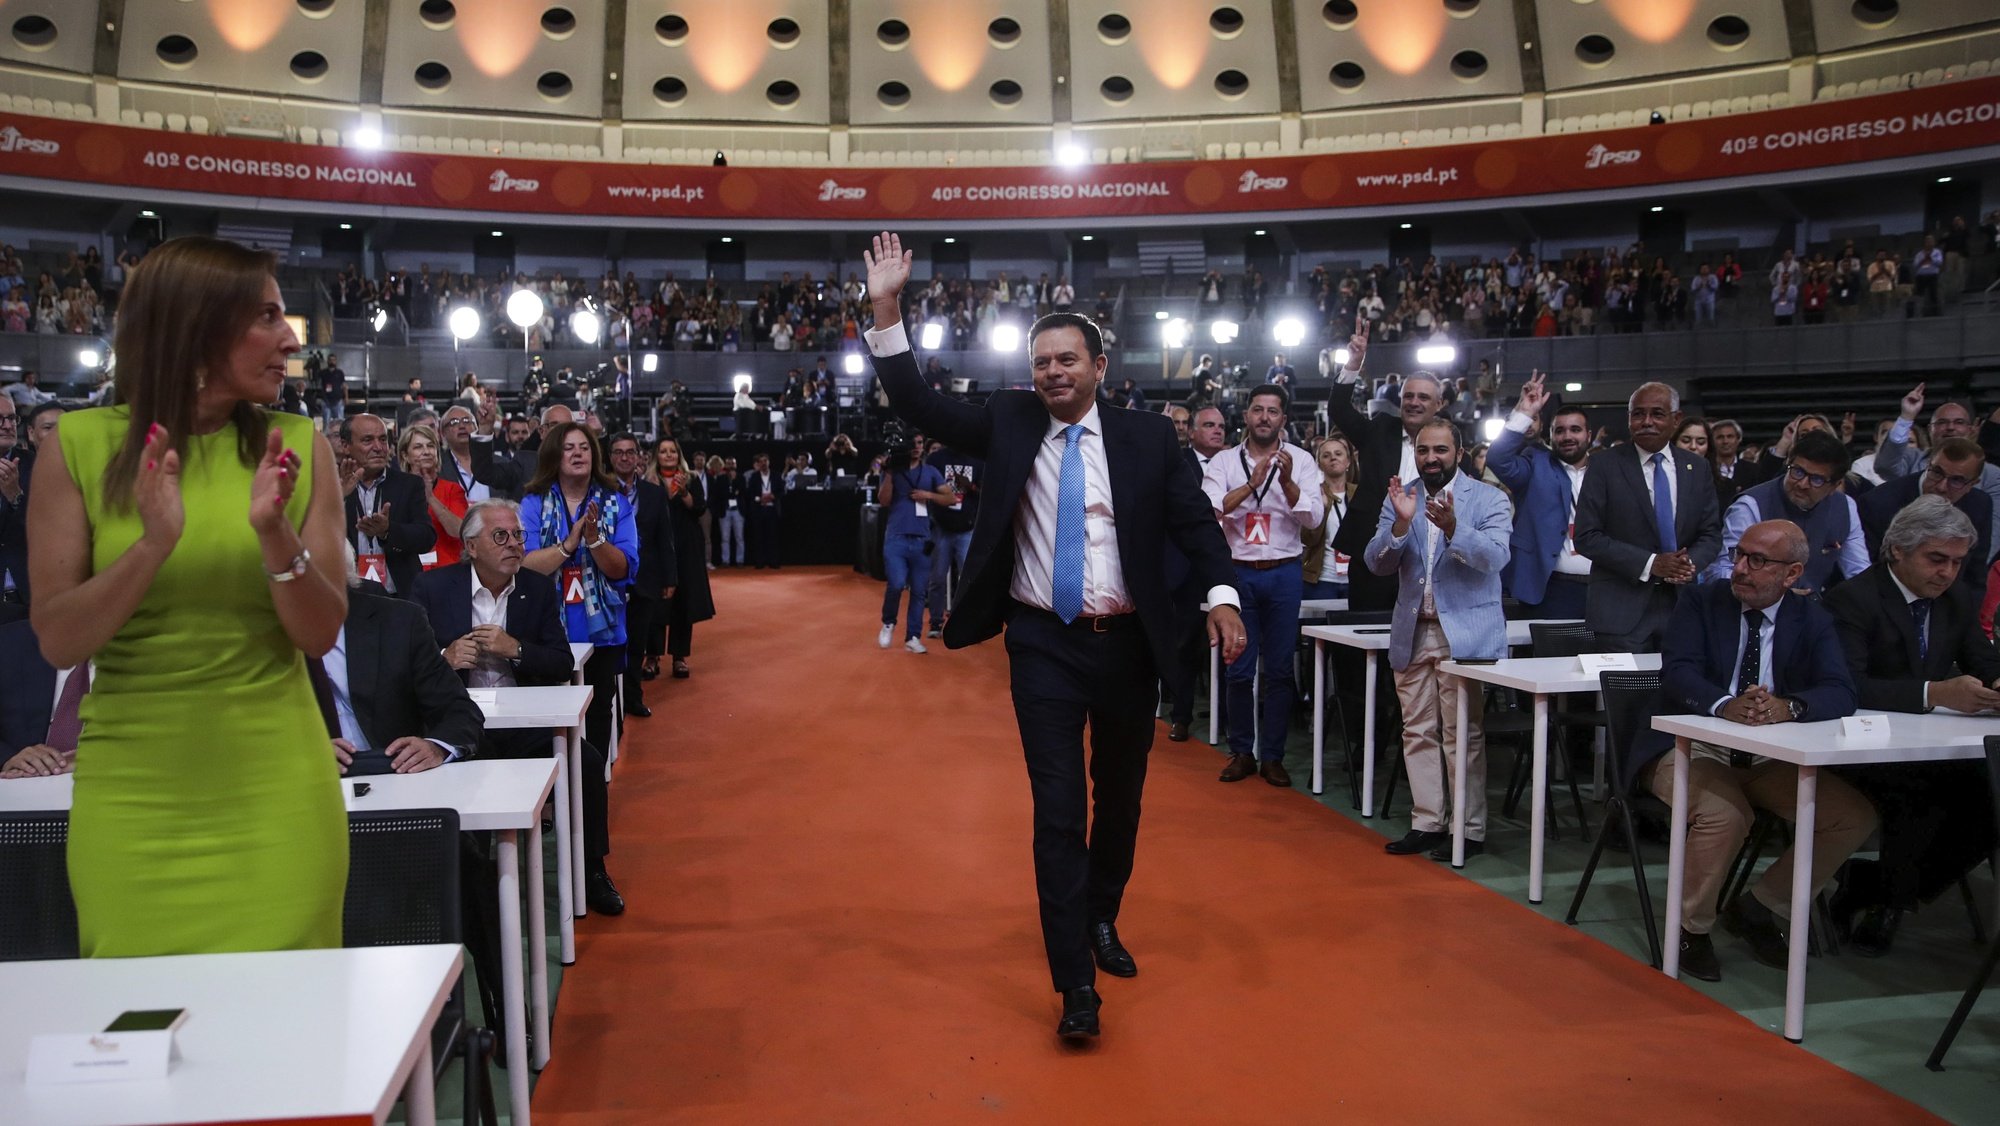 Luís Montenegro (C), presidente eleito do PSD, no 40.º Congresso Nacional do Partido Social Democrata, que decorre no Pavilhão Rosa Mota, no Porto, 03 de julho de 2022. ESTELA SILVA/LUSA